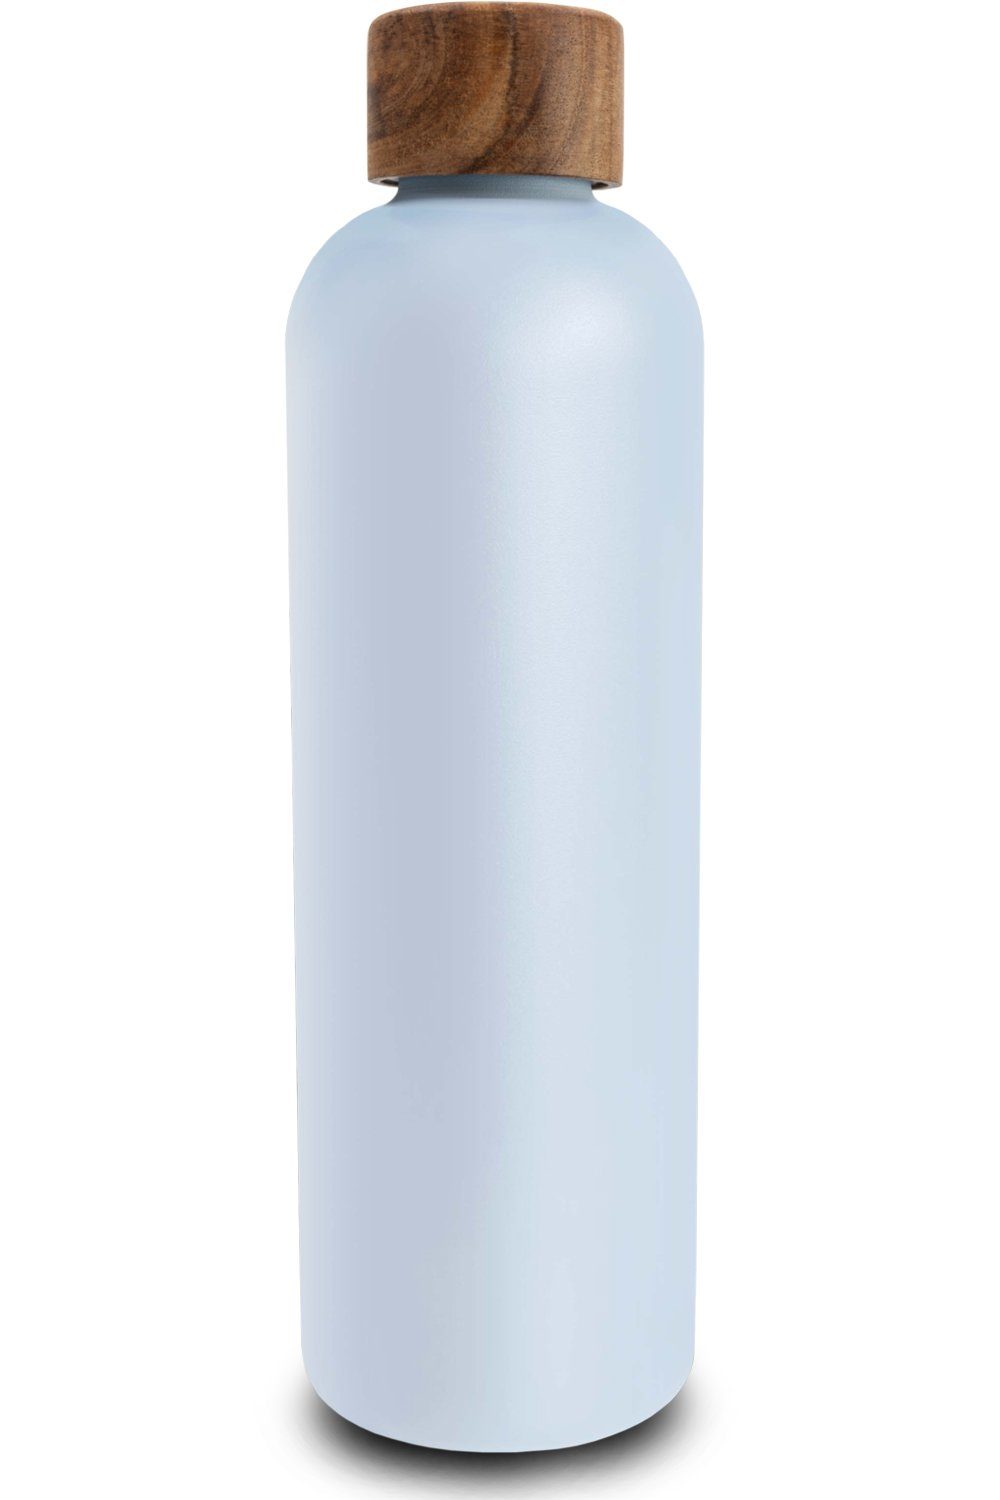 TRENDY AND NEW Trinkflasche T&N Edelstahl Trinkflasche 1 Liter - Wood Edition, Thermosflasche 1l für Büro, auslaufsichere, robuste, isolierte Wasserflasche 1000ml für Kohlensäure, Thermoskanne für unterwegs, Isolierflasche für Tee & Kaffee, hält 14h HEISS 29h EISKALT, Flasche für Sprudel-Wasser Sky Blue